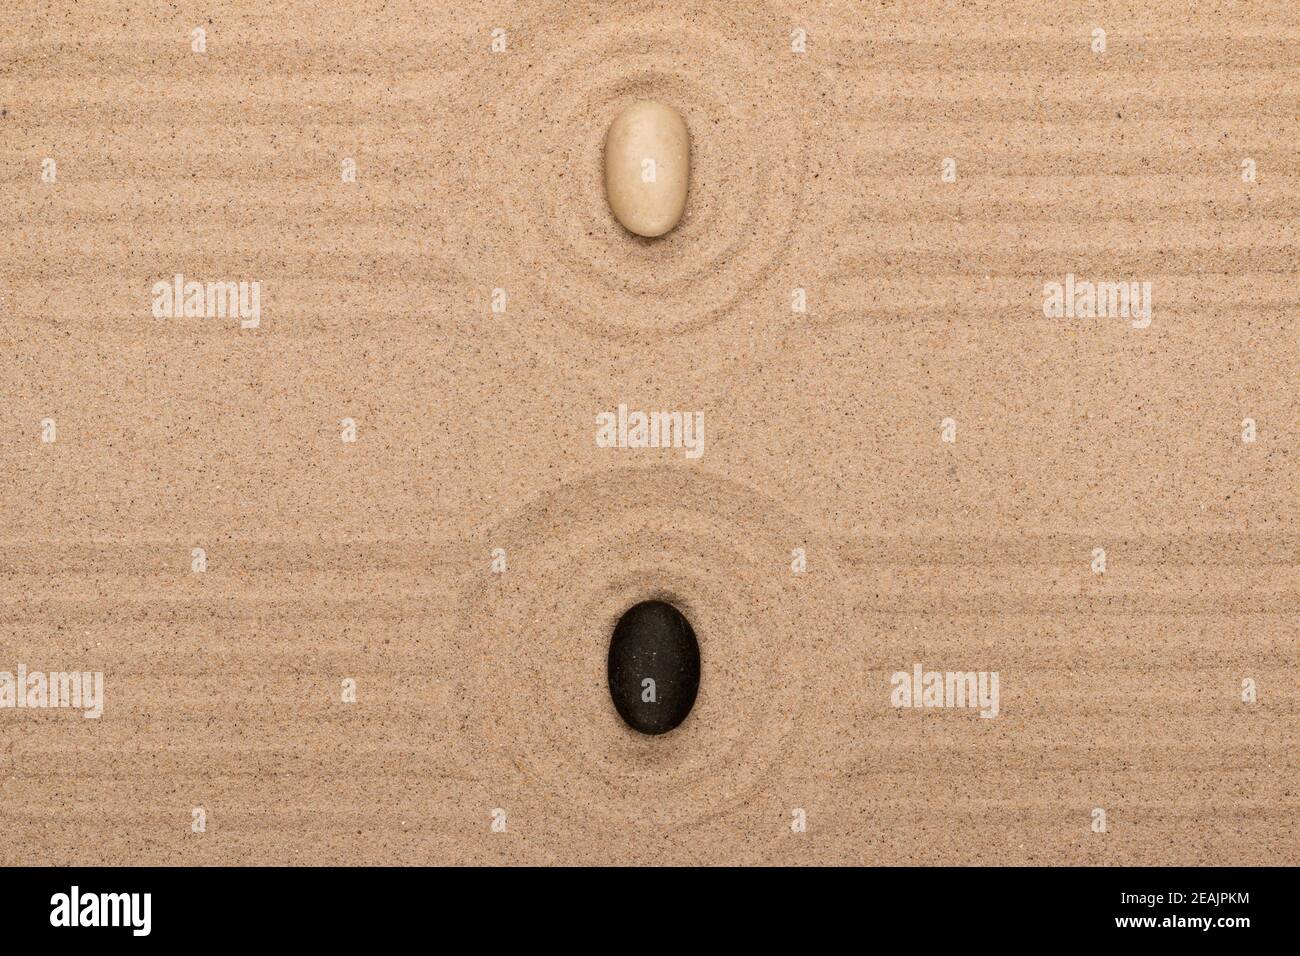 Zwei Steine liegen in der Mitte eines Sandkreises. Sommerkonzept. Stockfoto